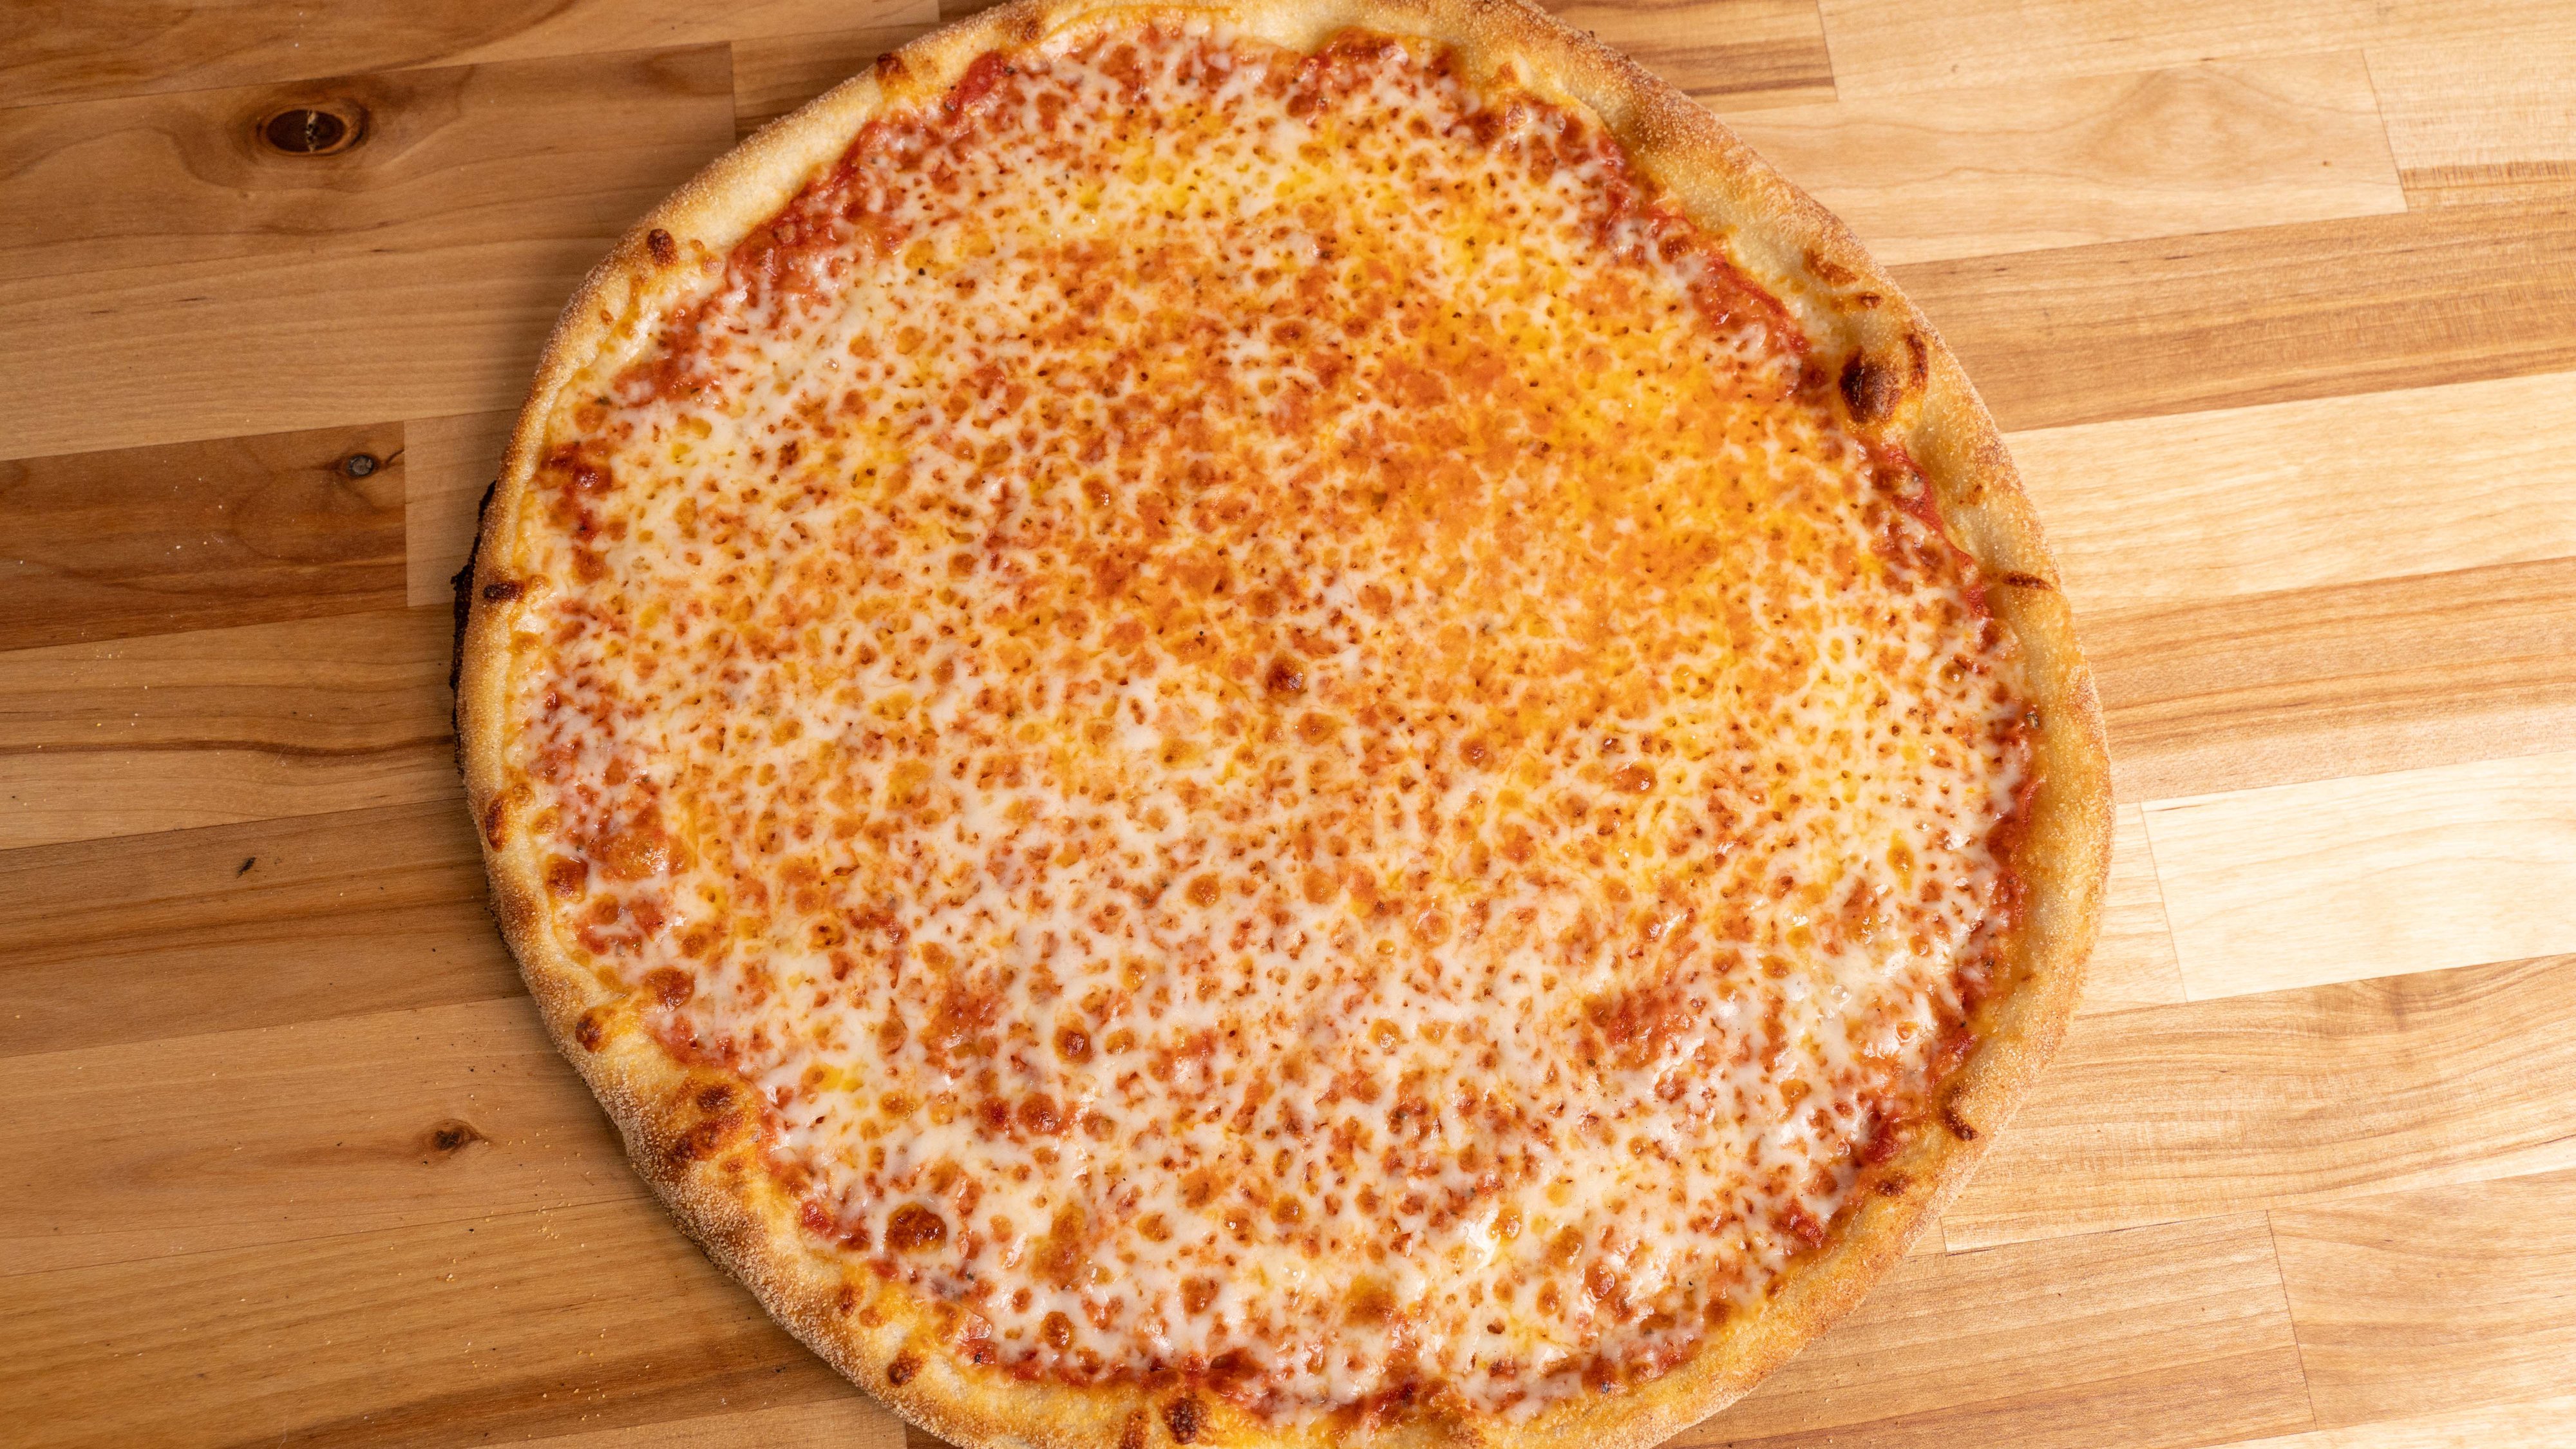 Gluten-Free Pizza (14")